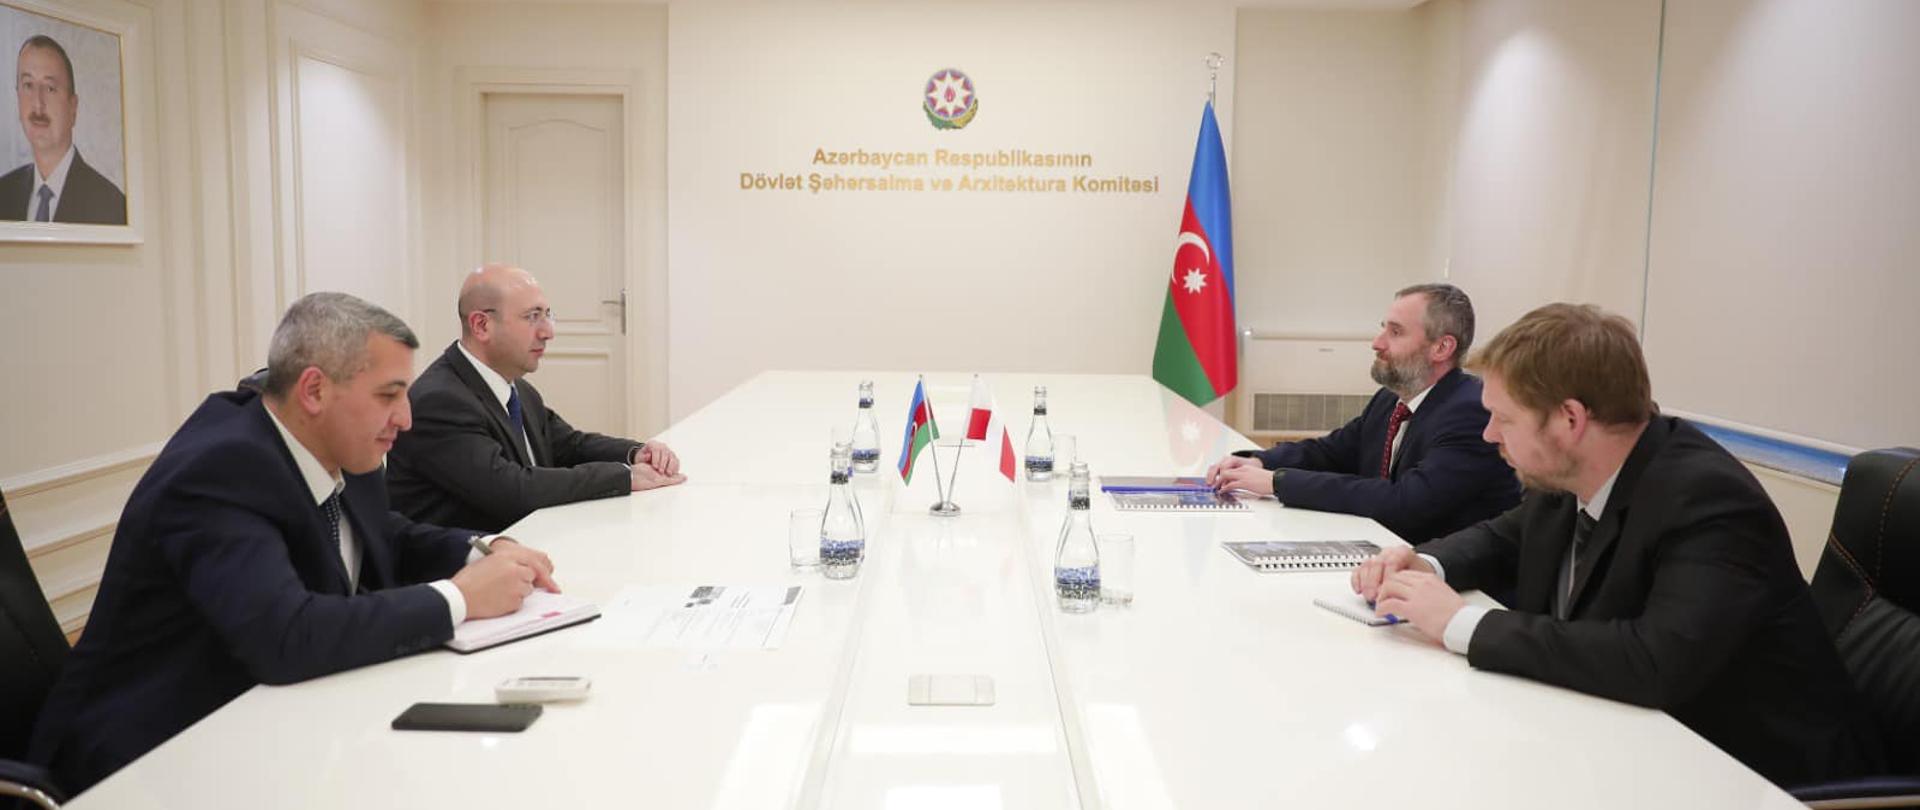 Spotkanie z szefem Państwowego Komitetu Planowania Urbanistycznego i Architektury Azerbejdżanu (7.02.2023)